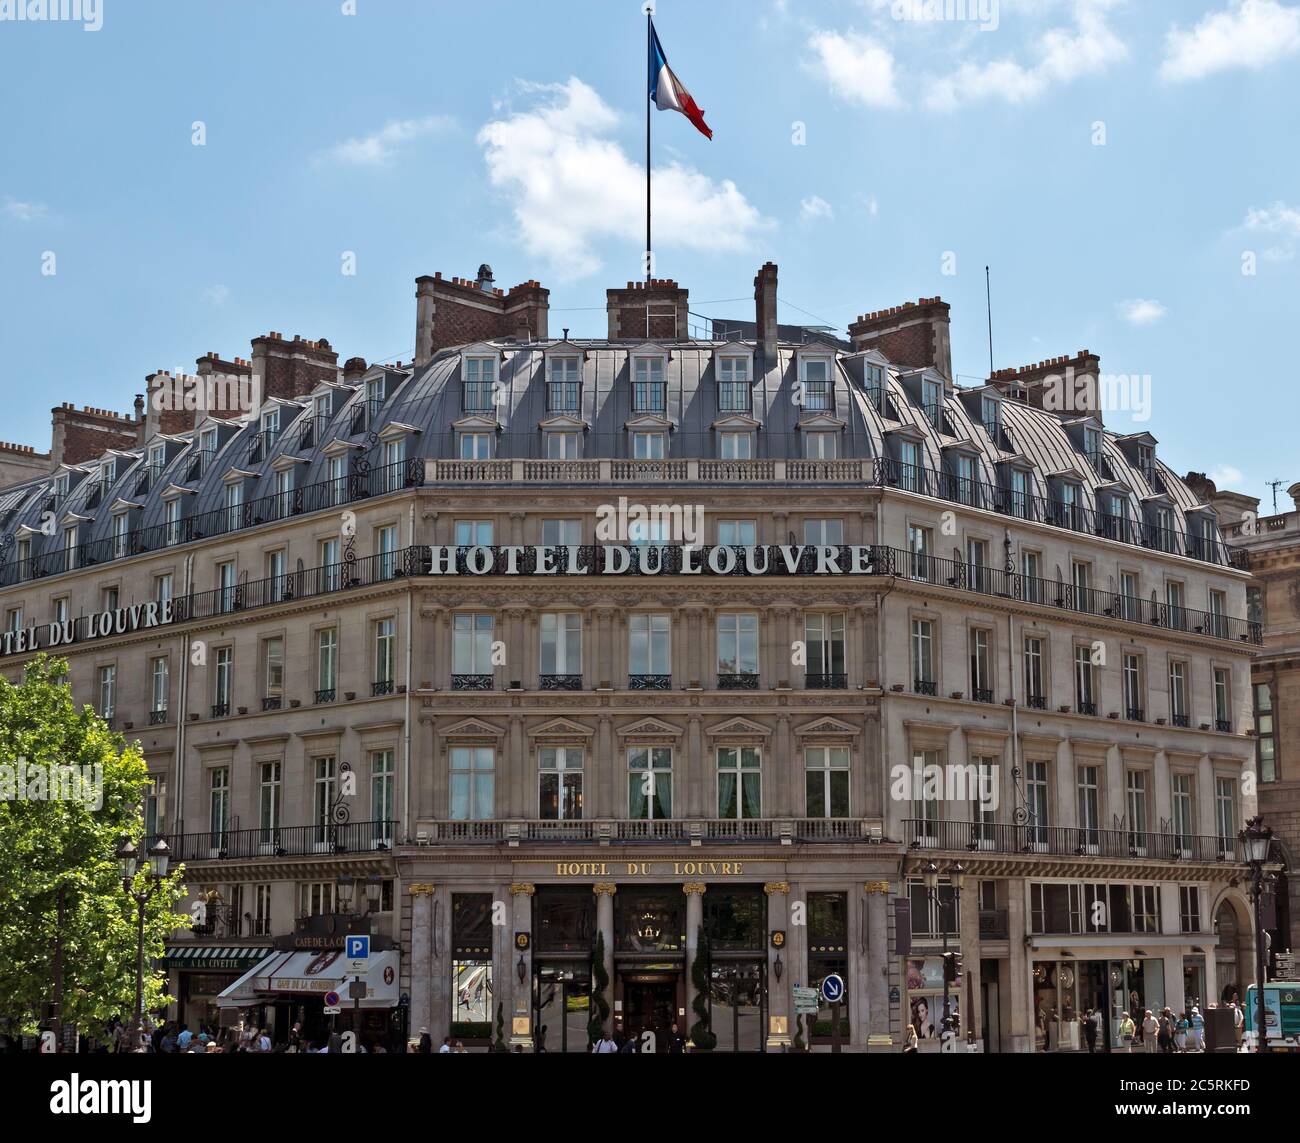 PARIGI, FRANCIA - 11 GIUGNO 2014: Facciata del Grand Hotel du Louvre, Hyatt Hotel a Parigi. Situato vicino al Louvre Palace in un bellissimo edificio storico Foto Stock